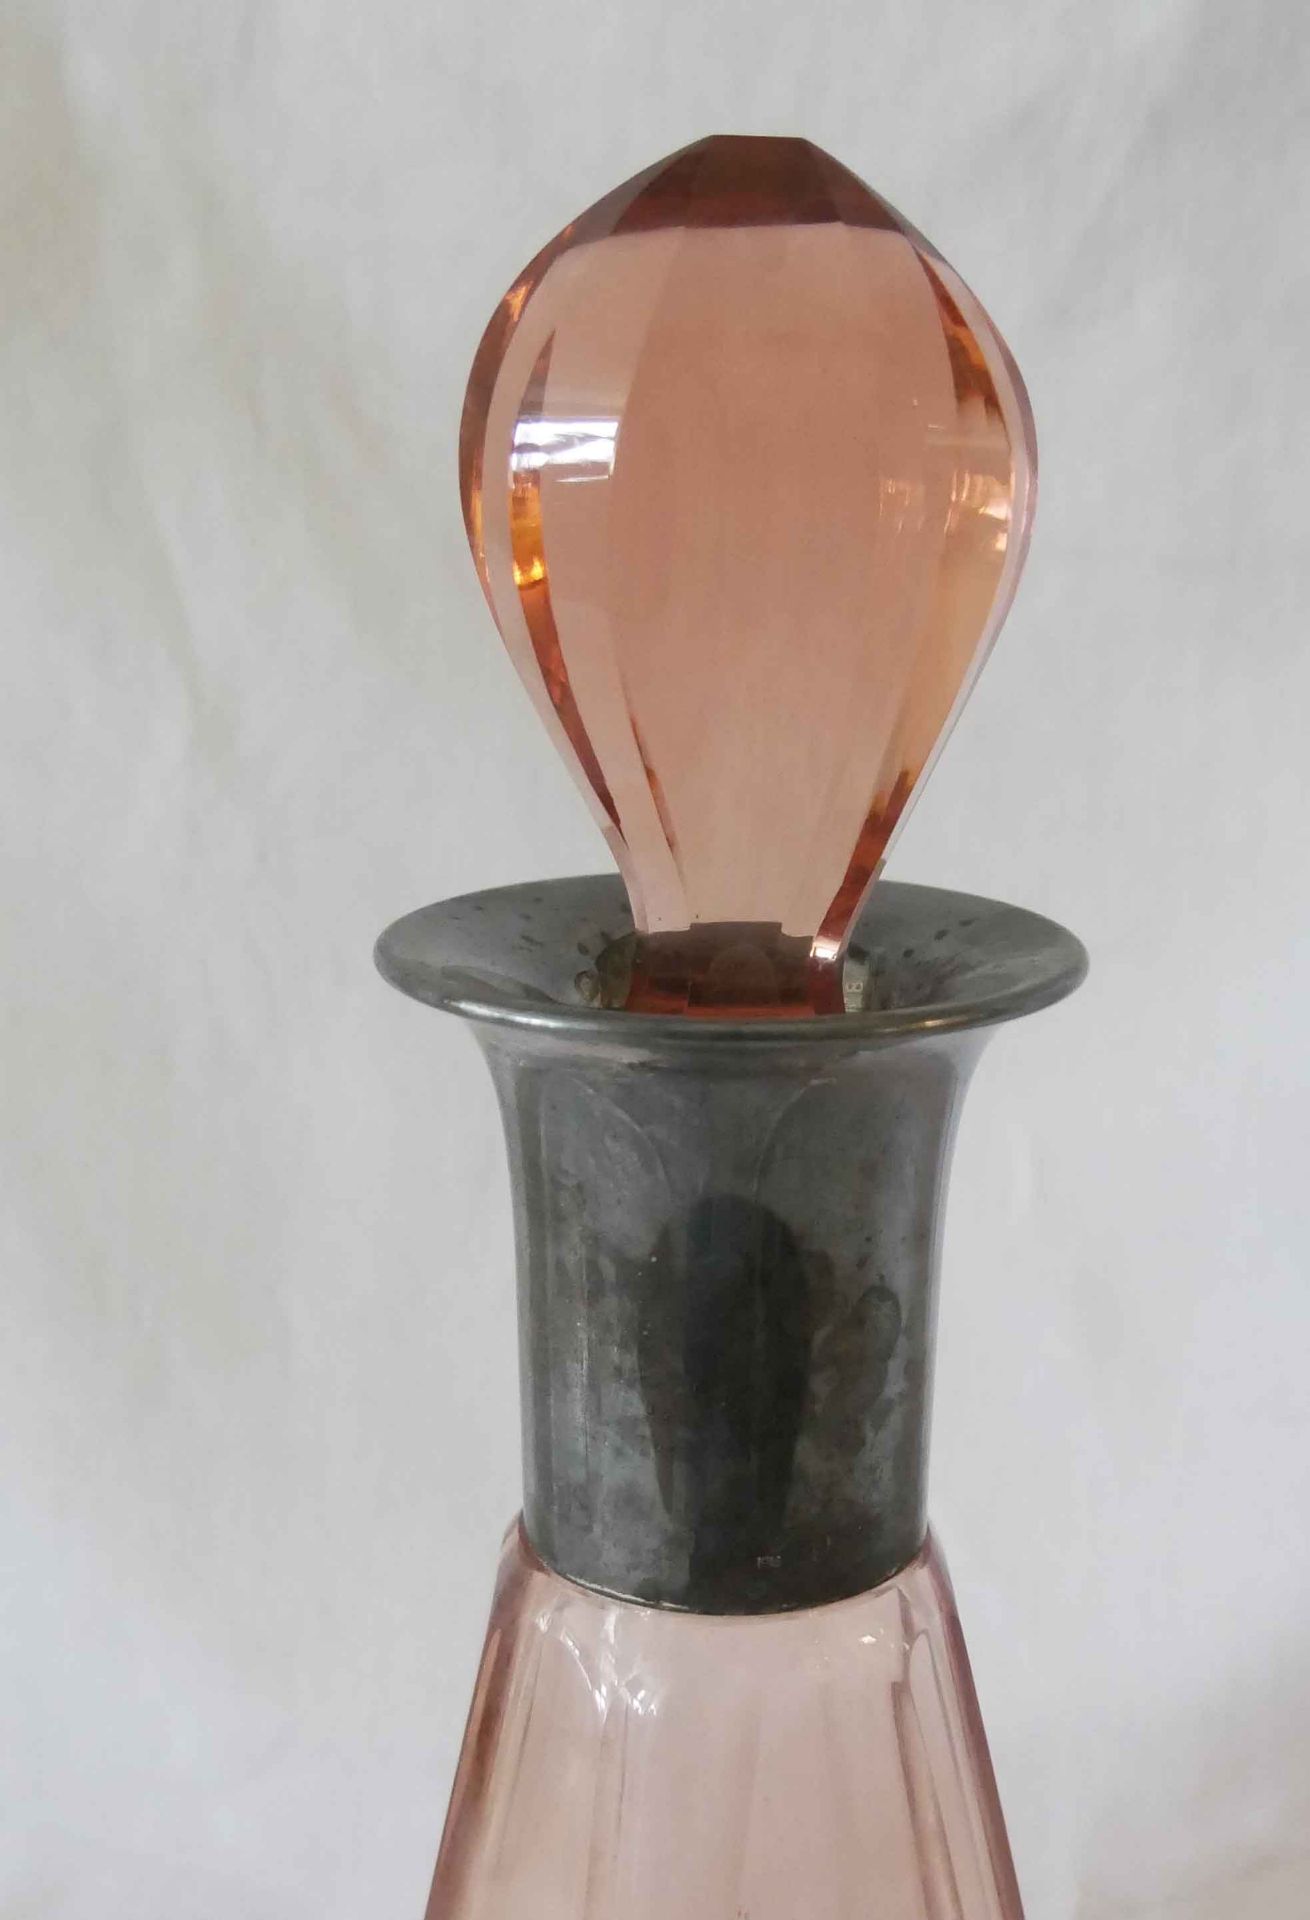 WMF Kristallglaskaraffe mit versilbertem Verschluß. WMF XO Marke, rosa/rubinfarben. Guter Zustand. - Image 2 of 2